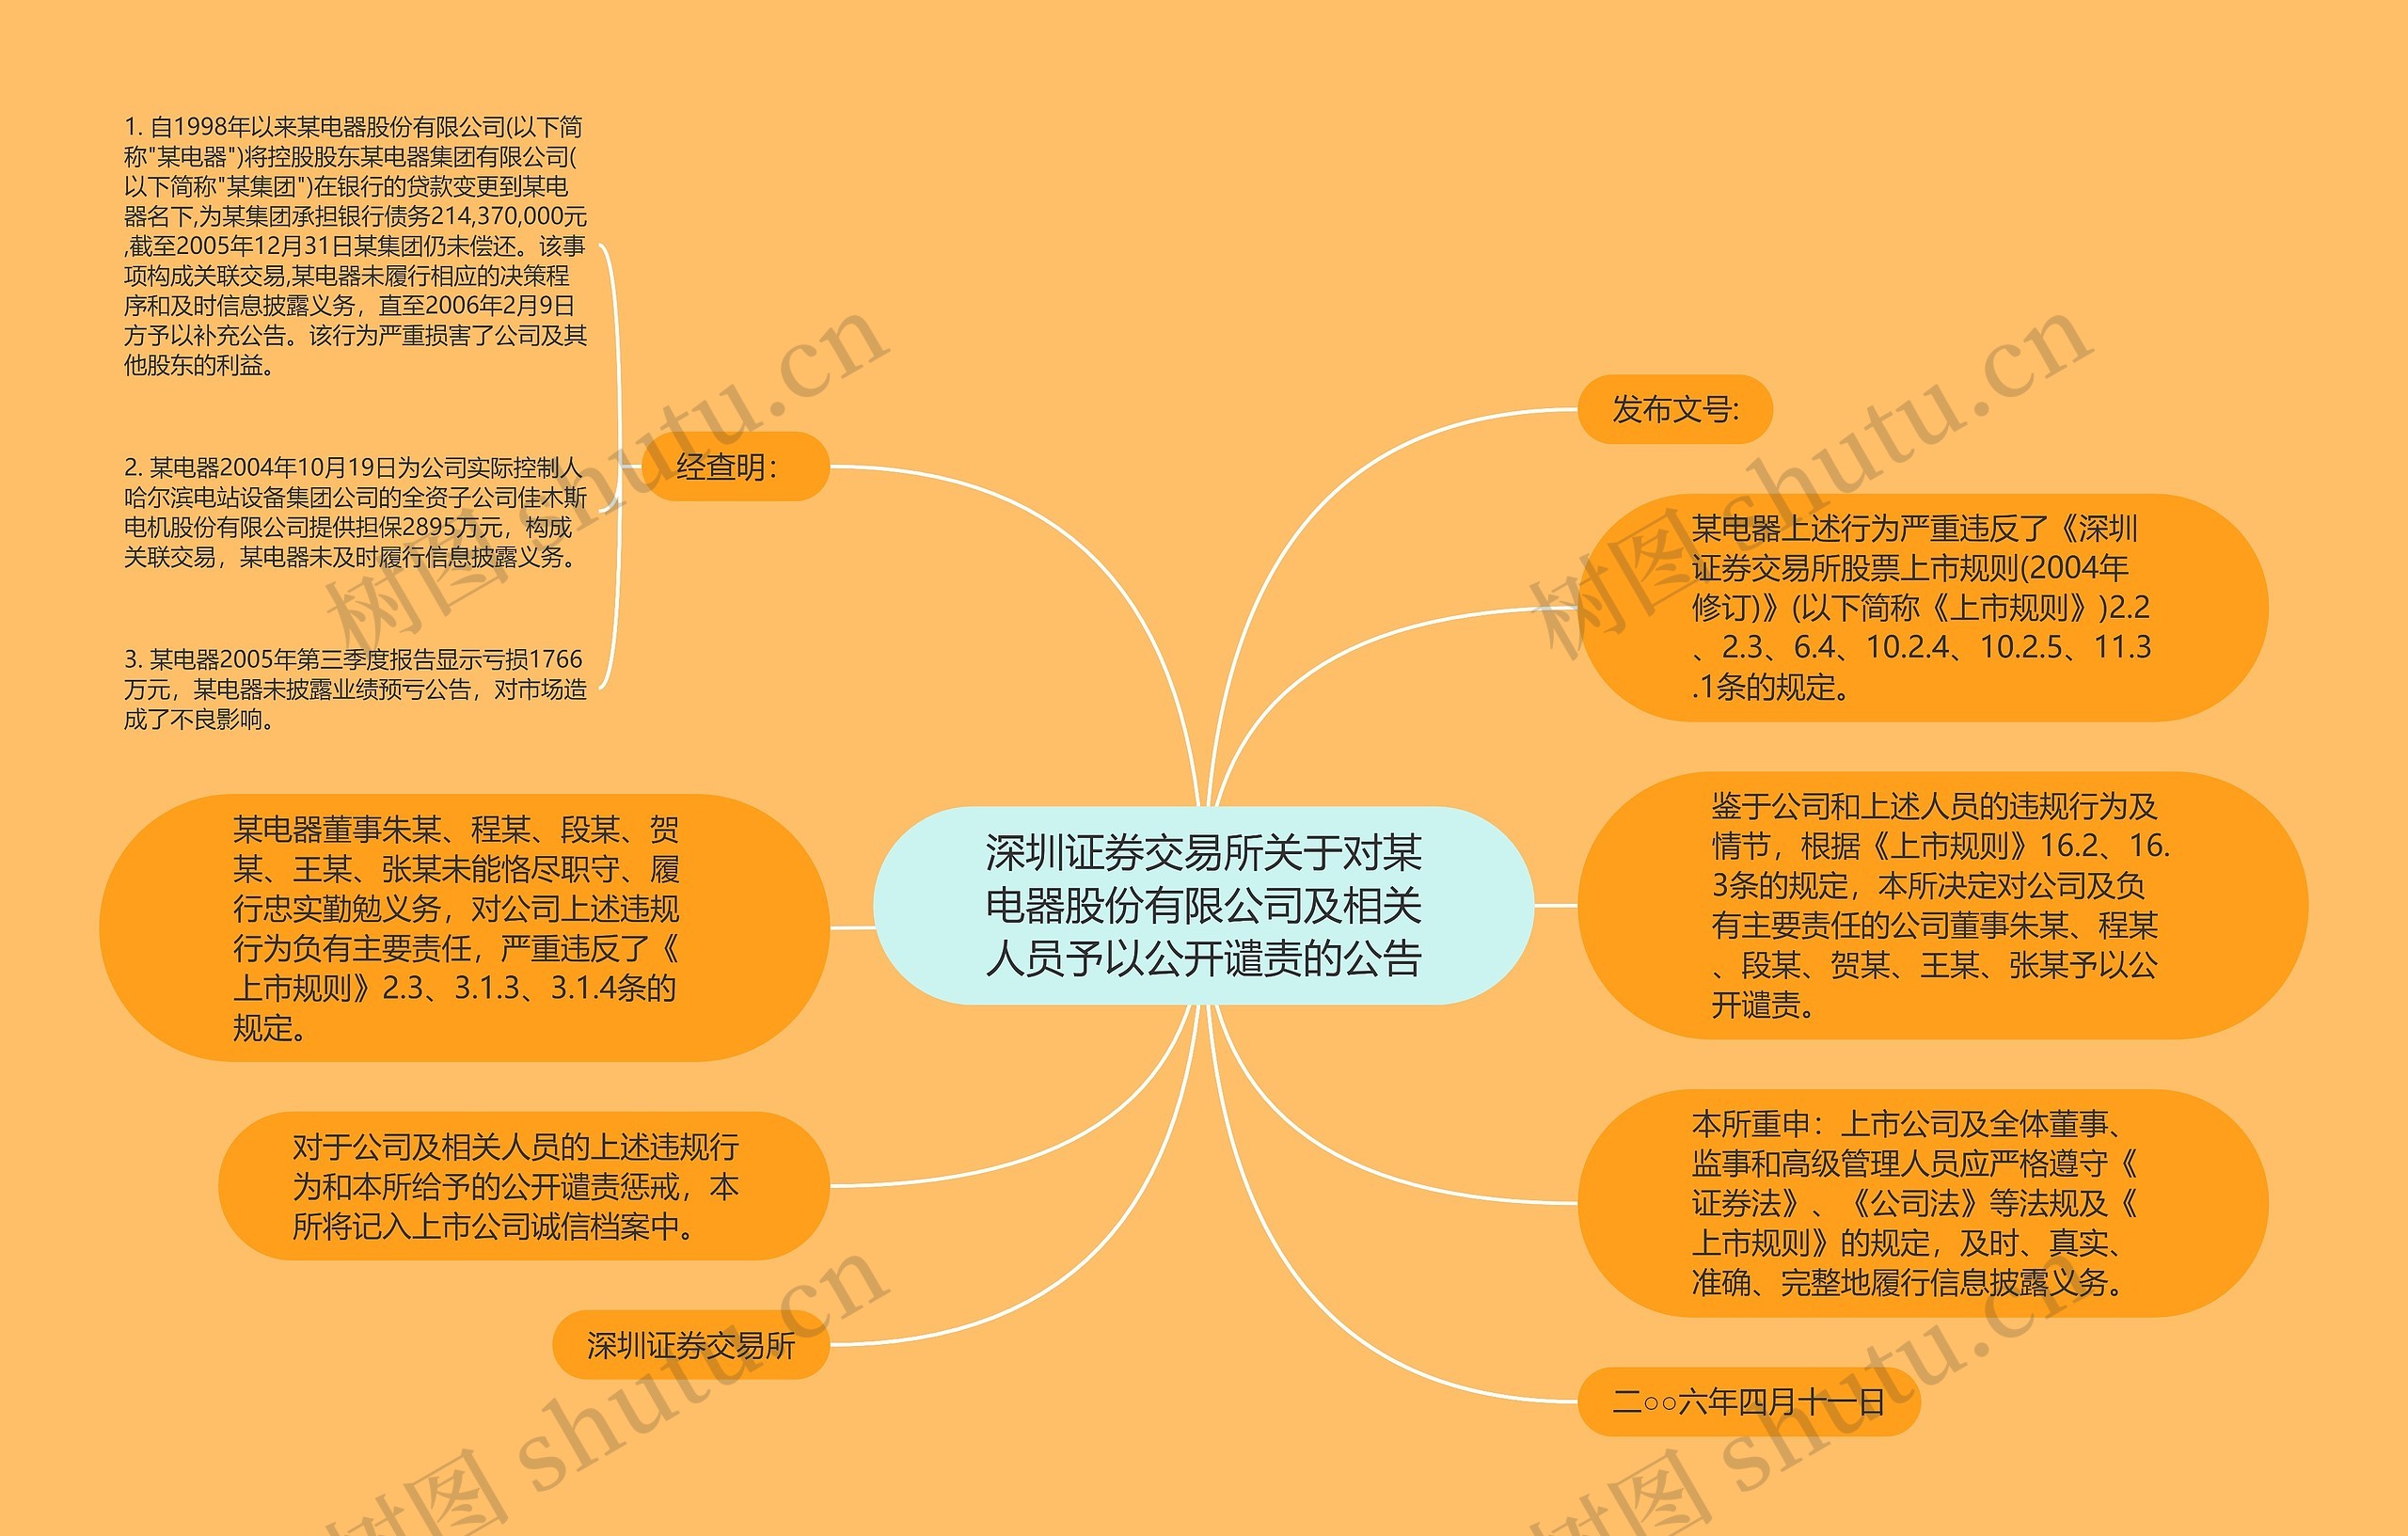 深圳证券交易所关于对某电器股份有限公司及相关人员予以公开谴责的公告